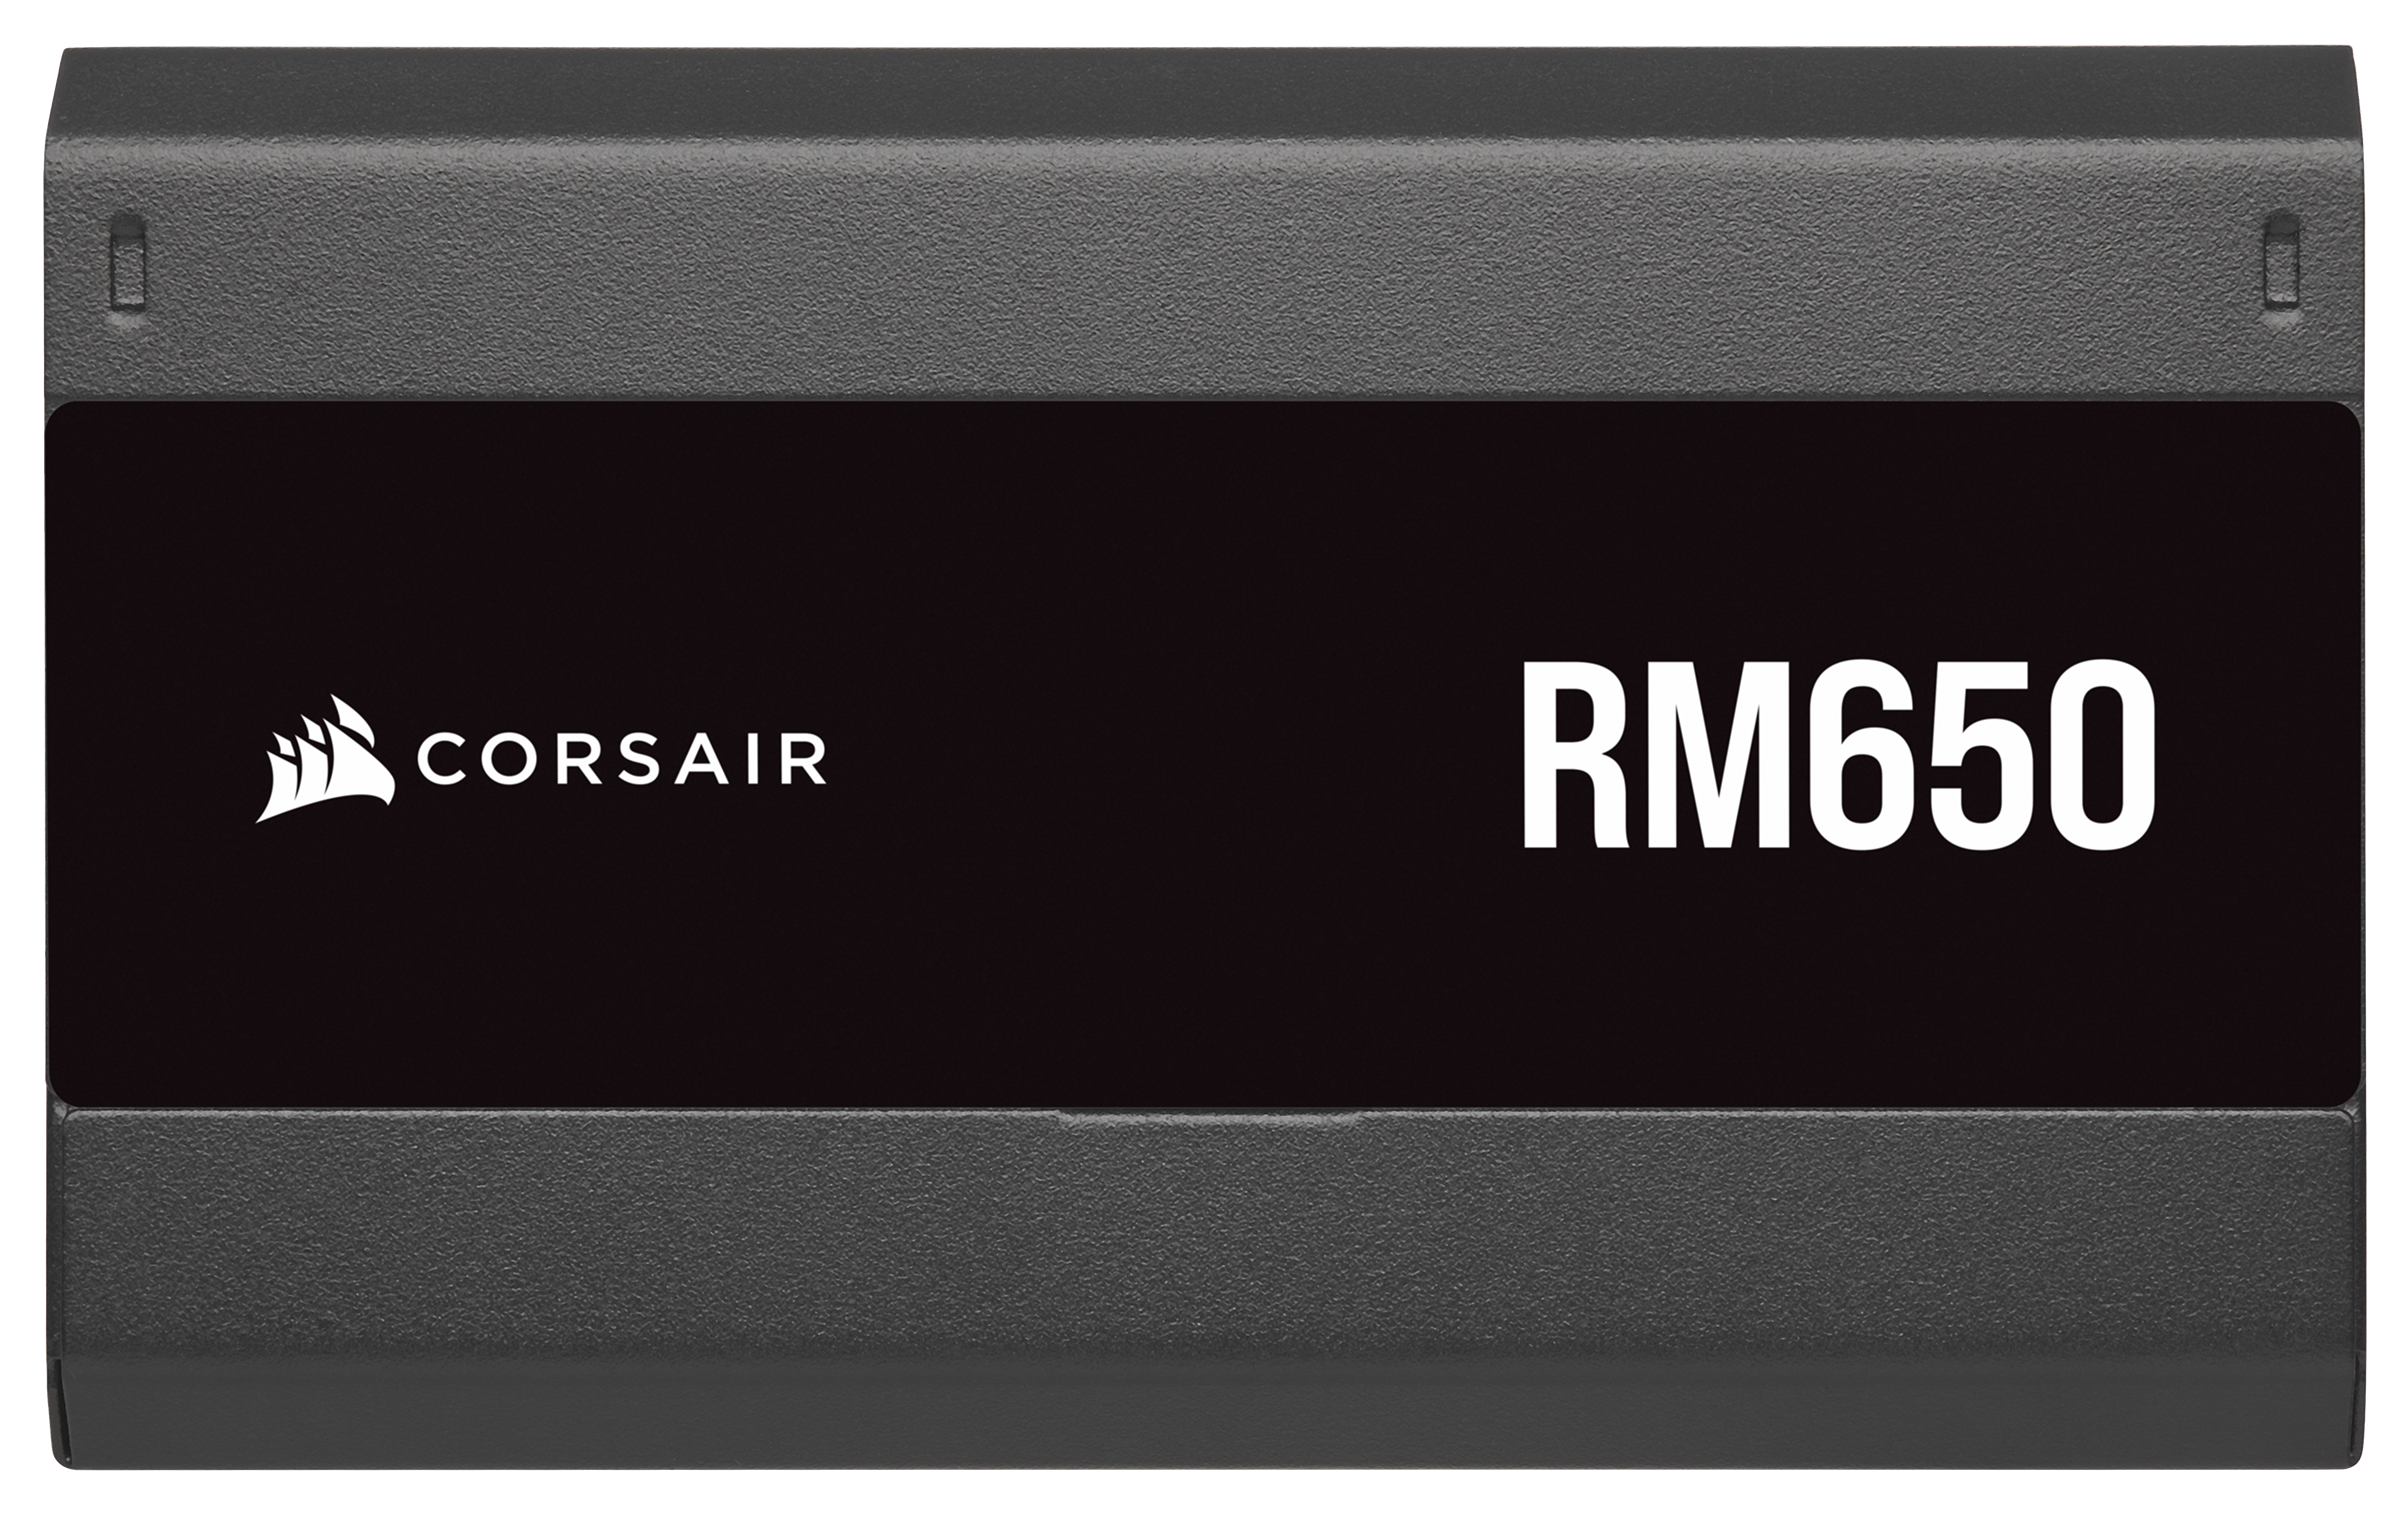 Corsair RM650 - Alimentation - ATX12V - 80 PLUS Gold - 650 Watt - Modulaire  - 100-240V